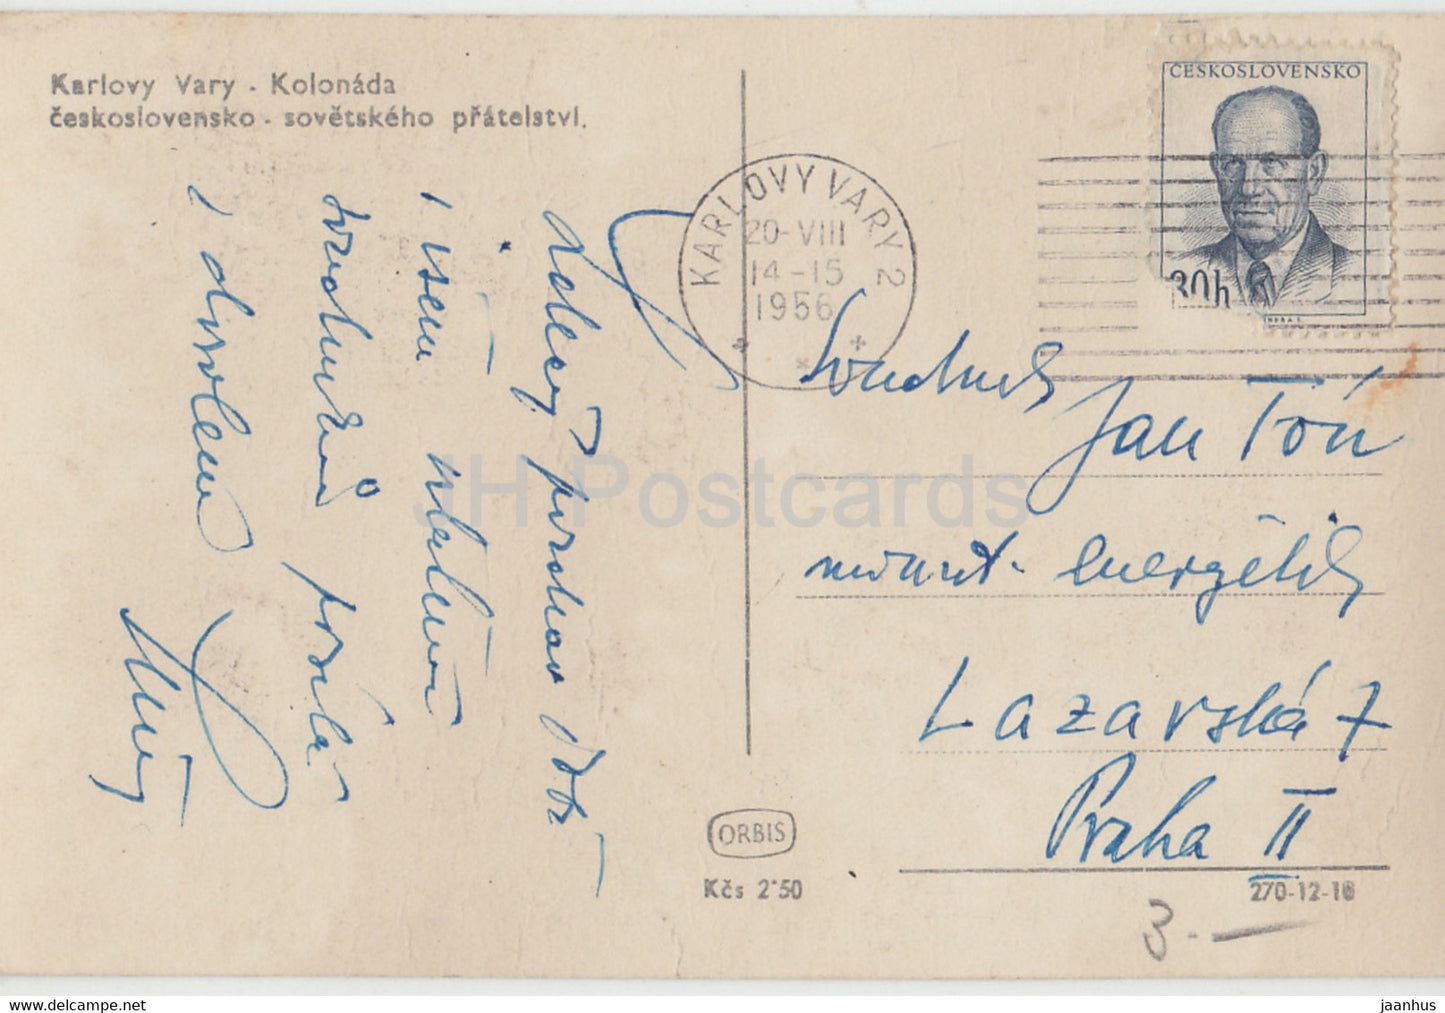 Karlovy Vary - Karlsbad - kolonada - Colonnade - 593 - carte postale ancienne - 1956 - Tchécoslovaquie - République tchèque - inutilisé